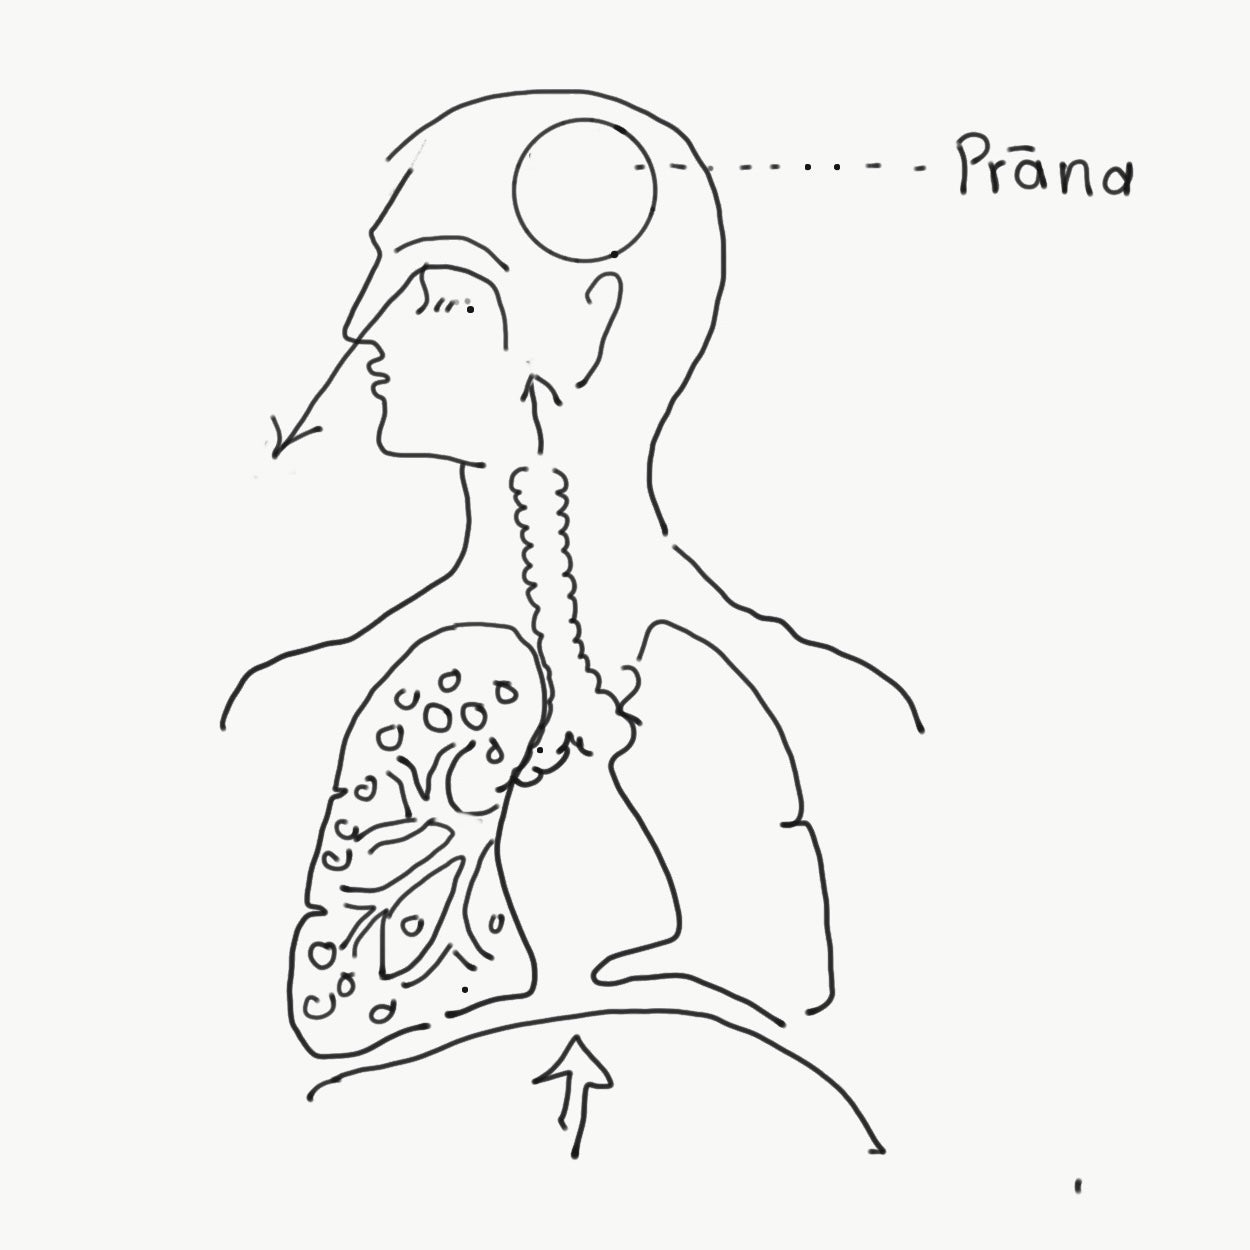 Prana Vaha Srotas (The Channel of Our Vital Breath)